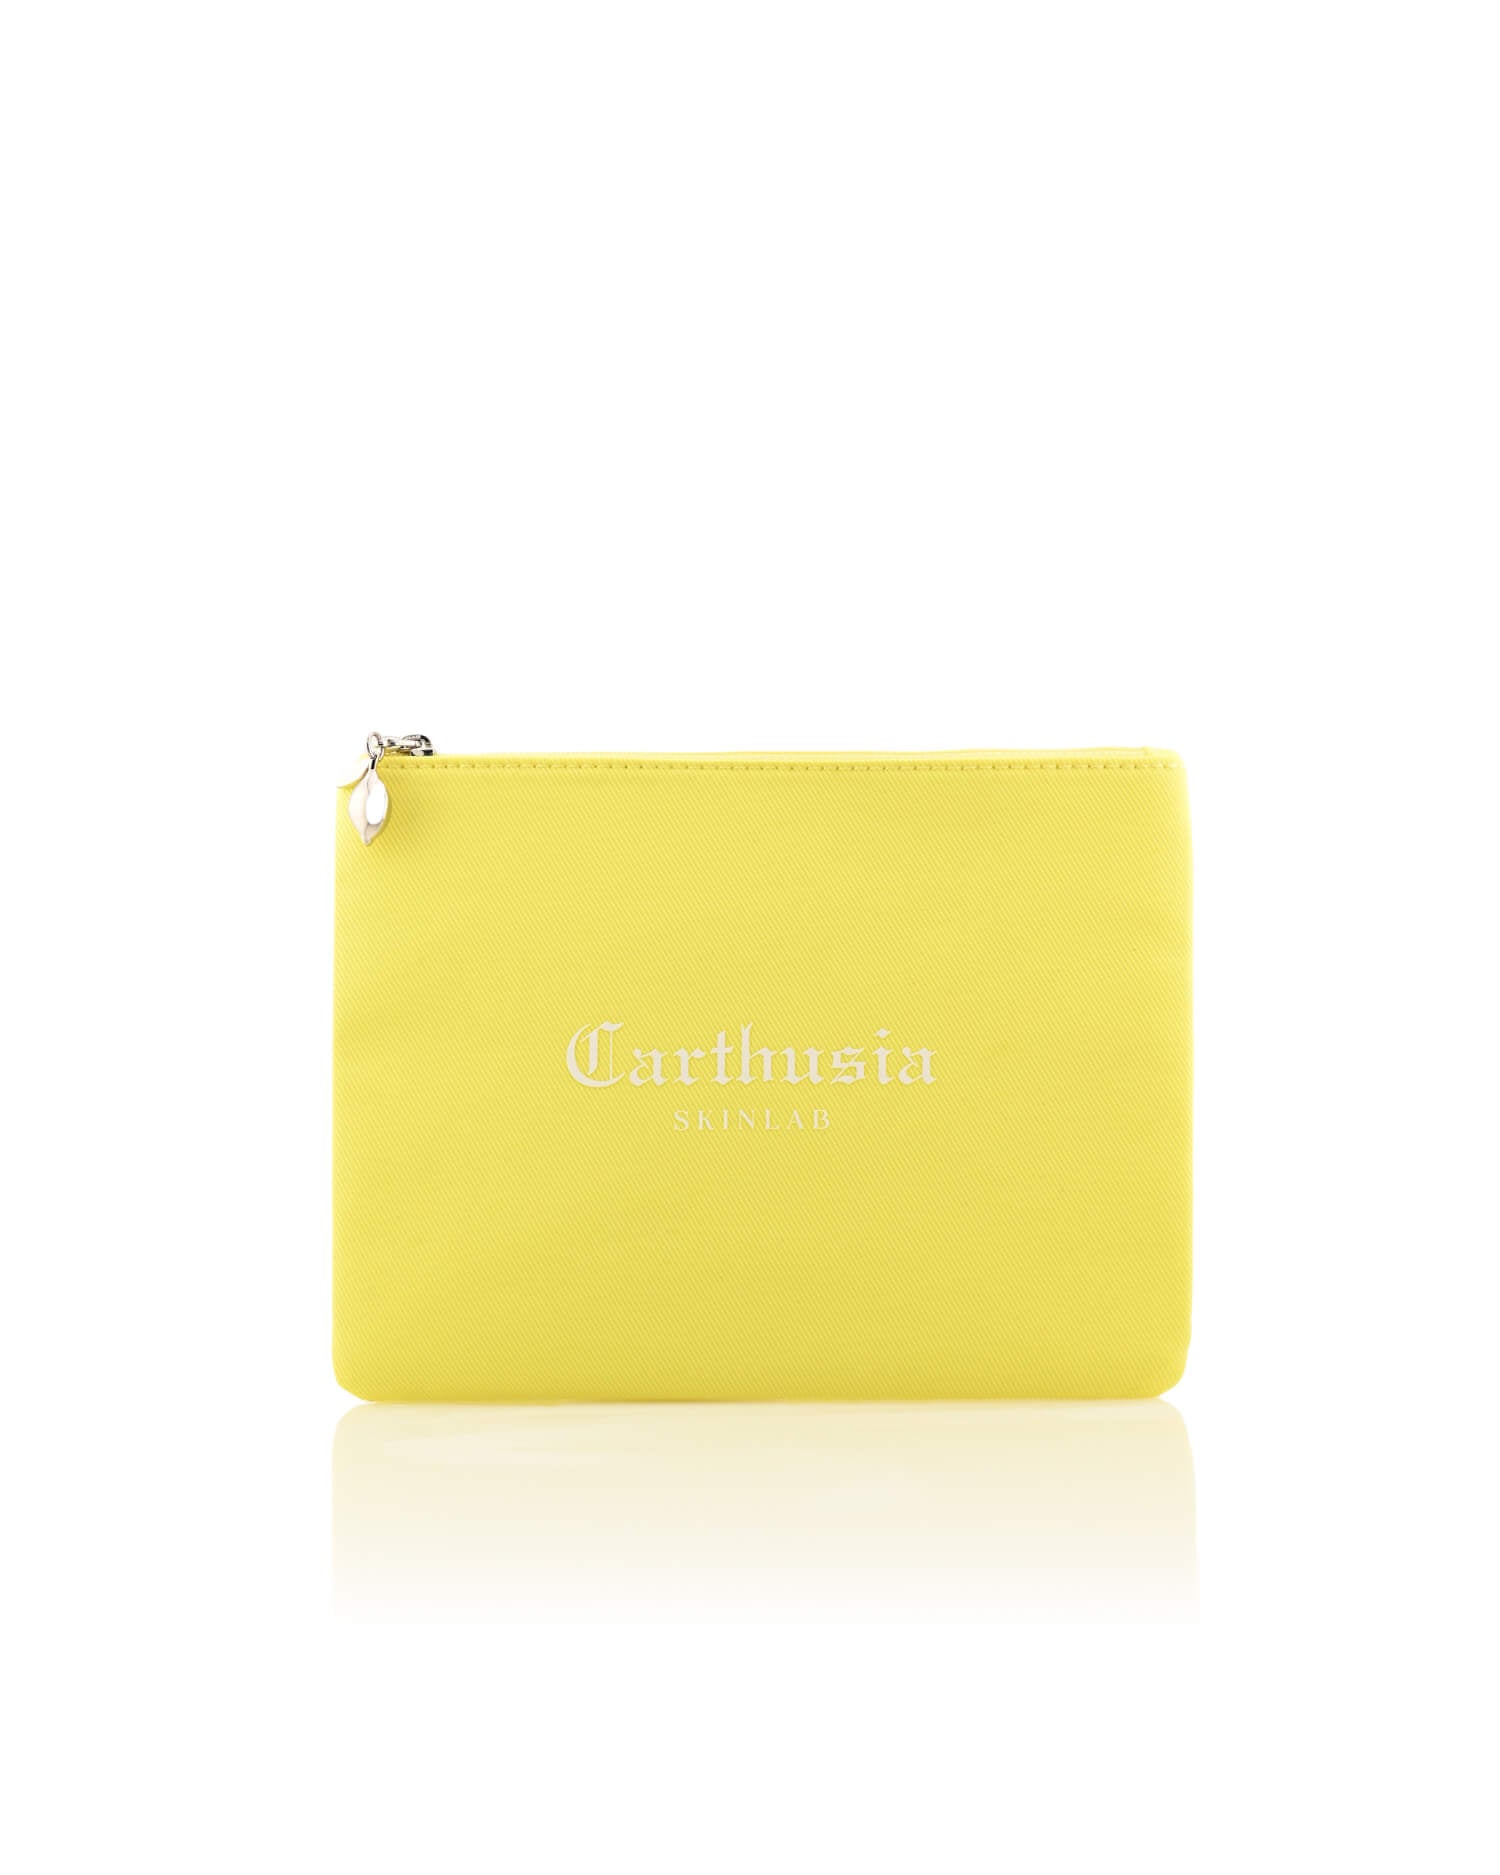 Carthusia Lemon Garden SkinLab Pochette Viaggio 5 prodotti.